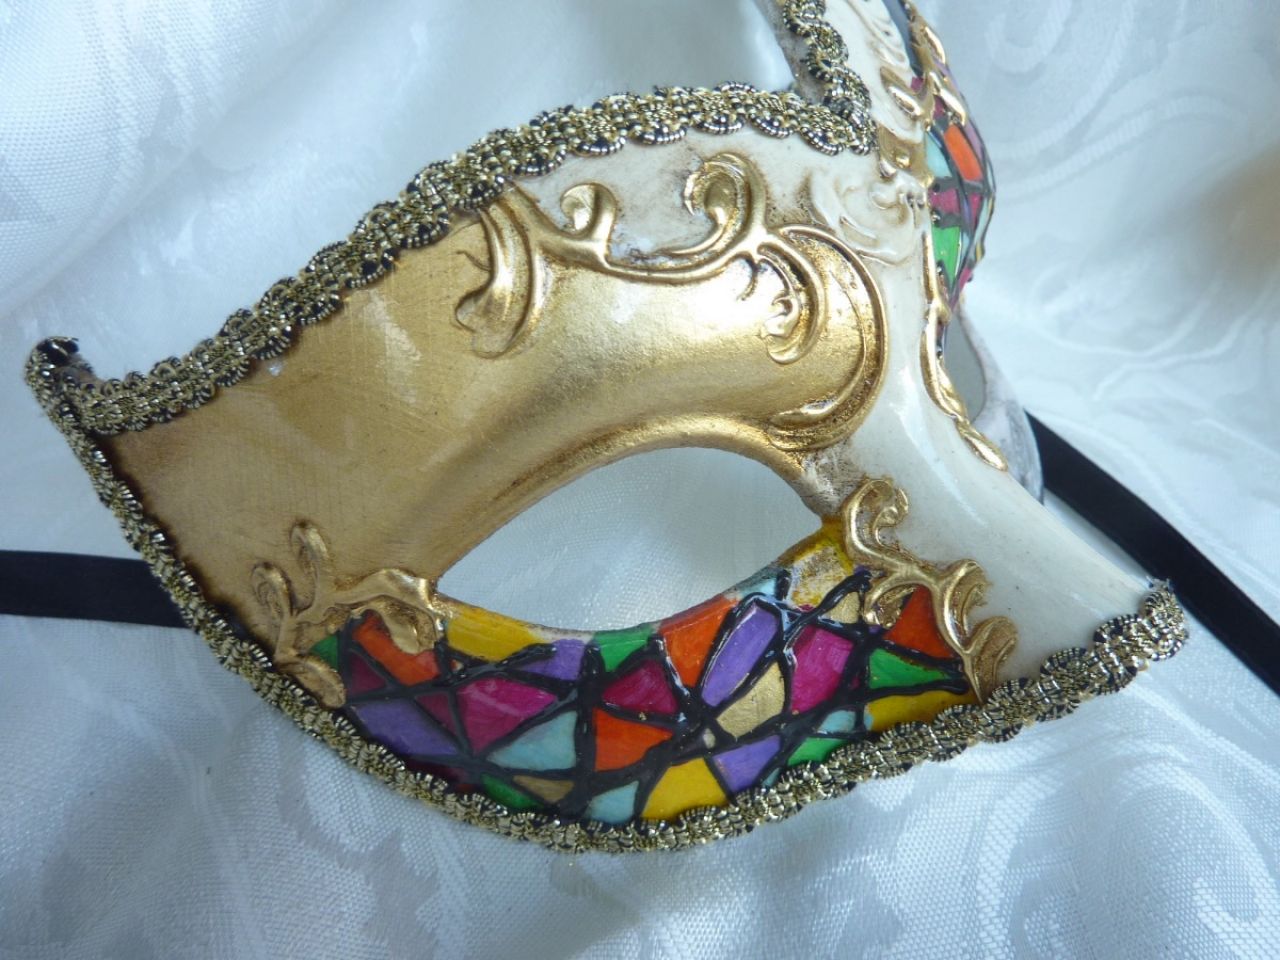 masque loup dÃ©corÃ© Ã  la main, multicolor avec arabesques dorÃ© et reproduction d'une vu de Venise